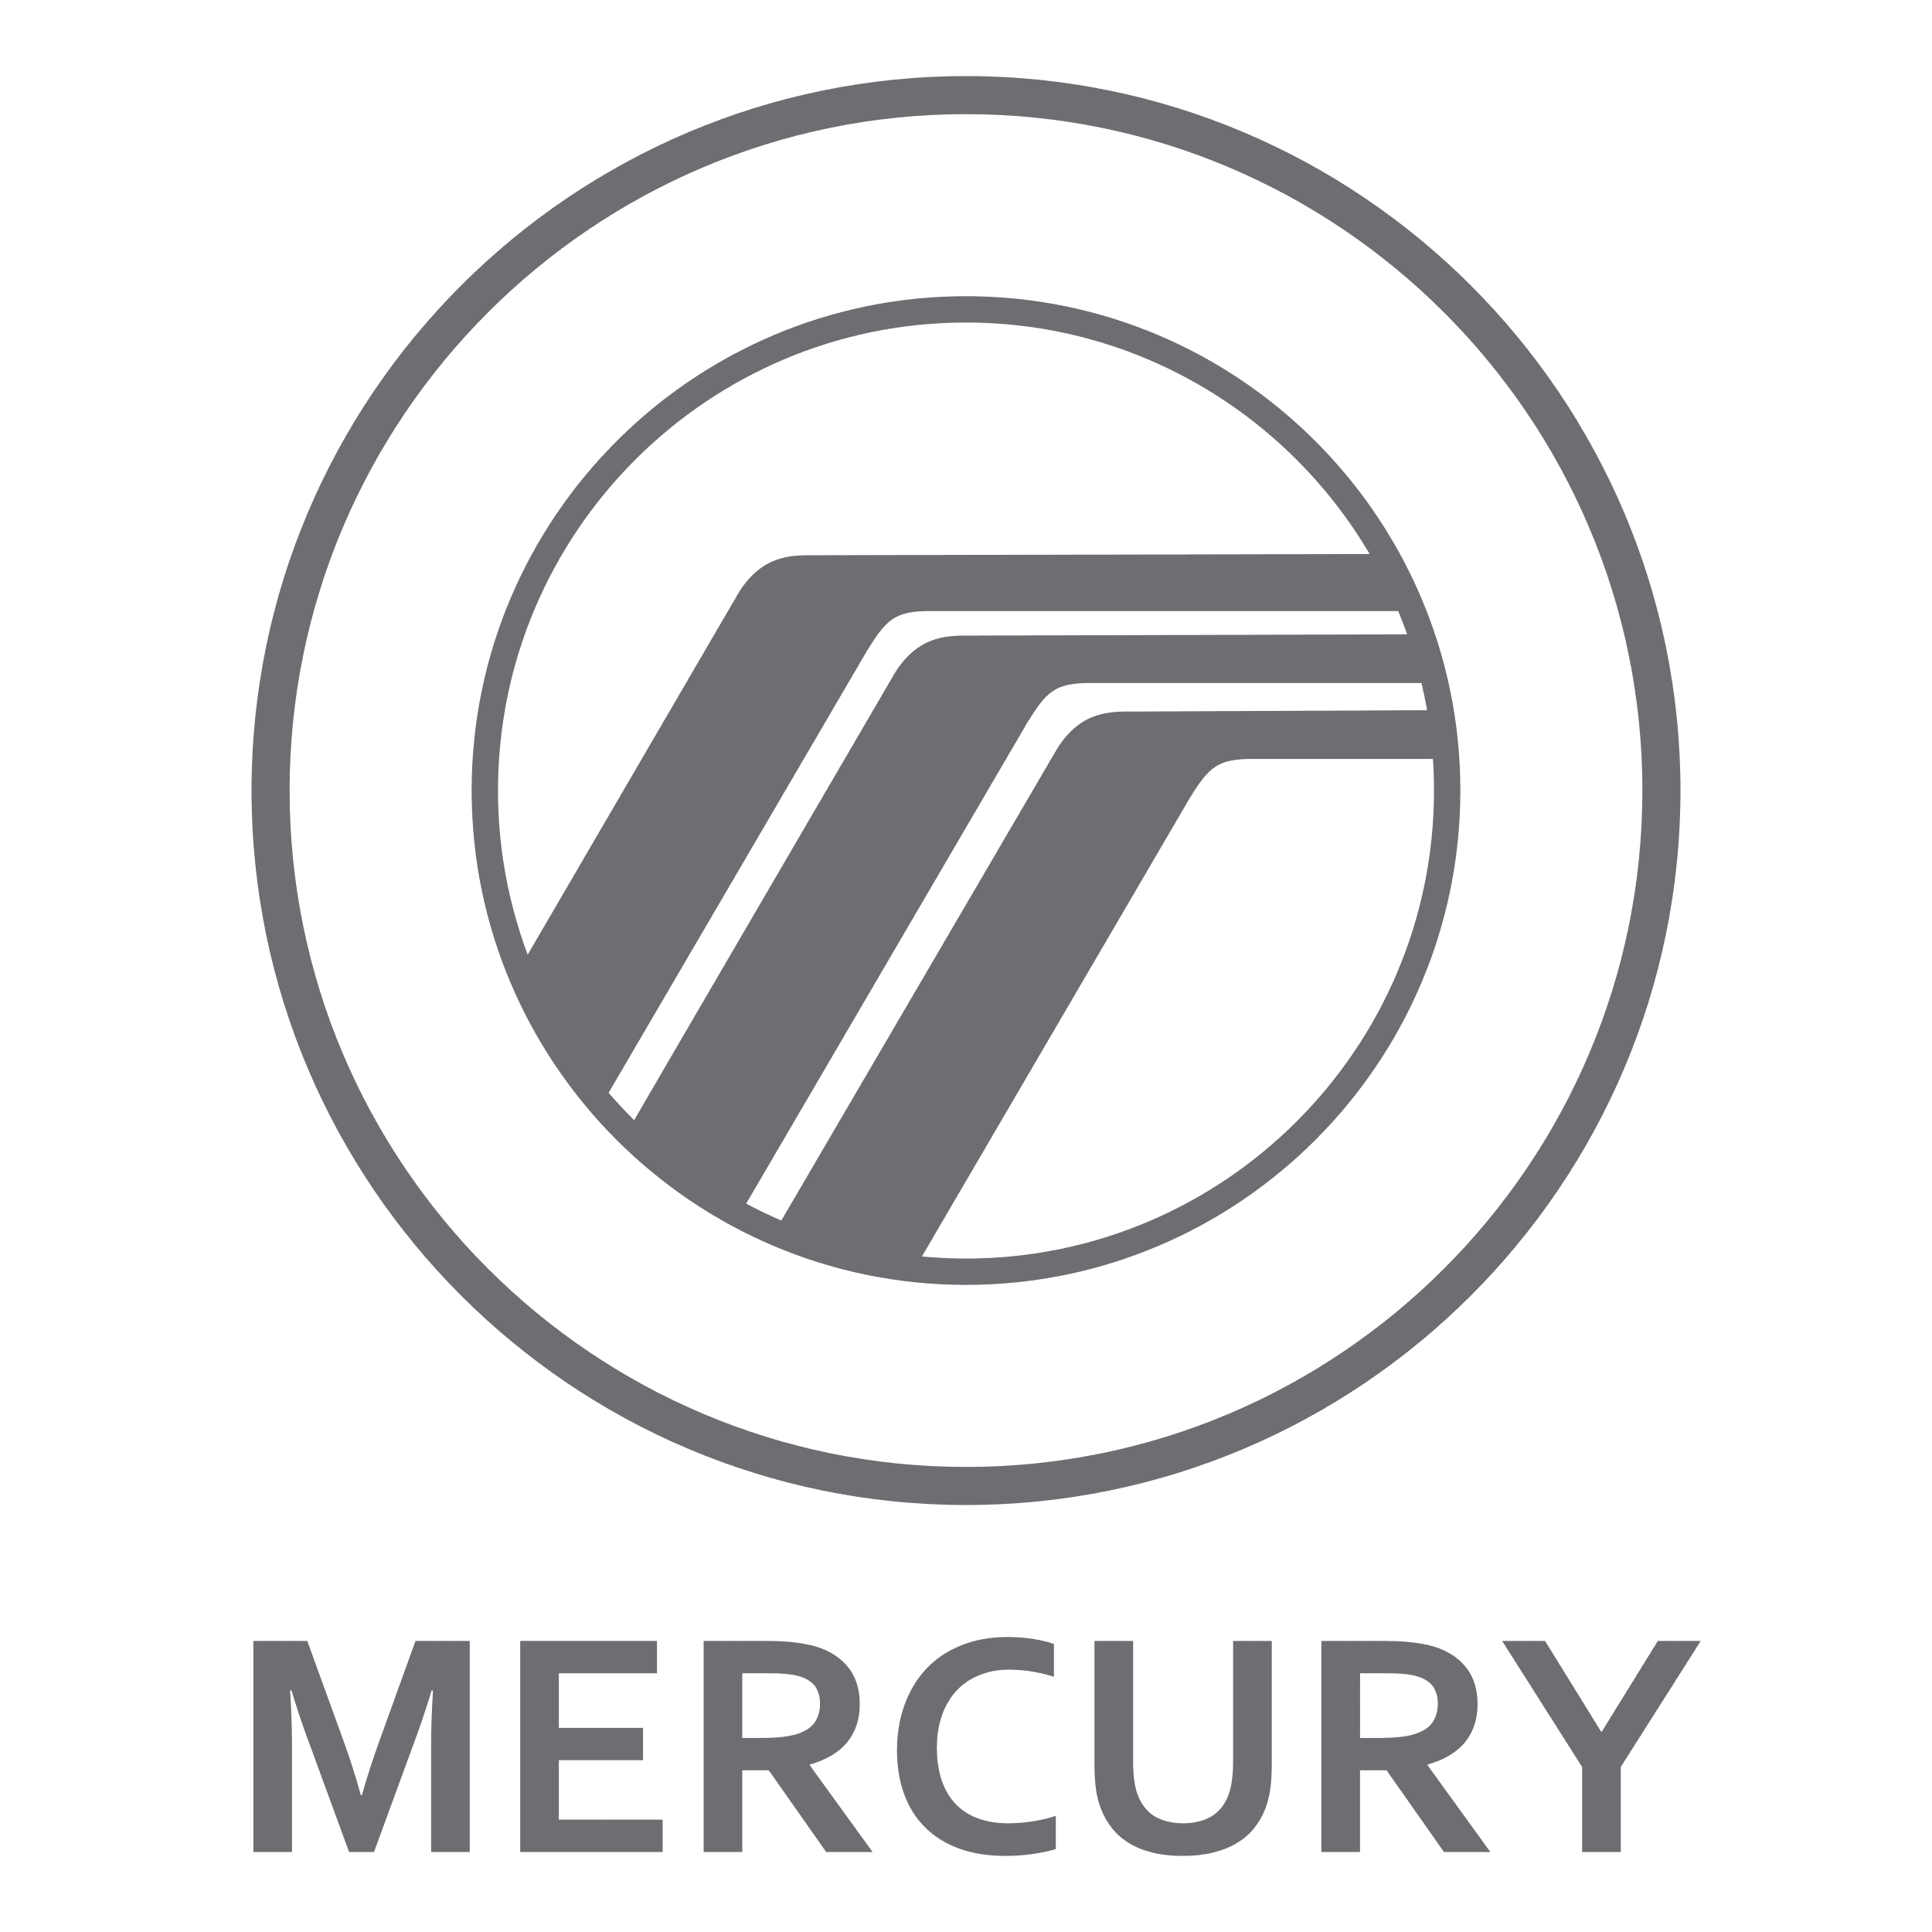 Mercury parts